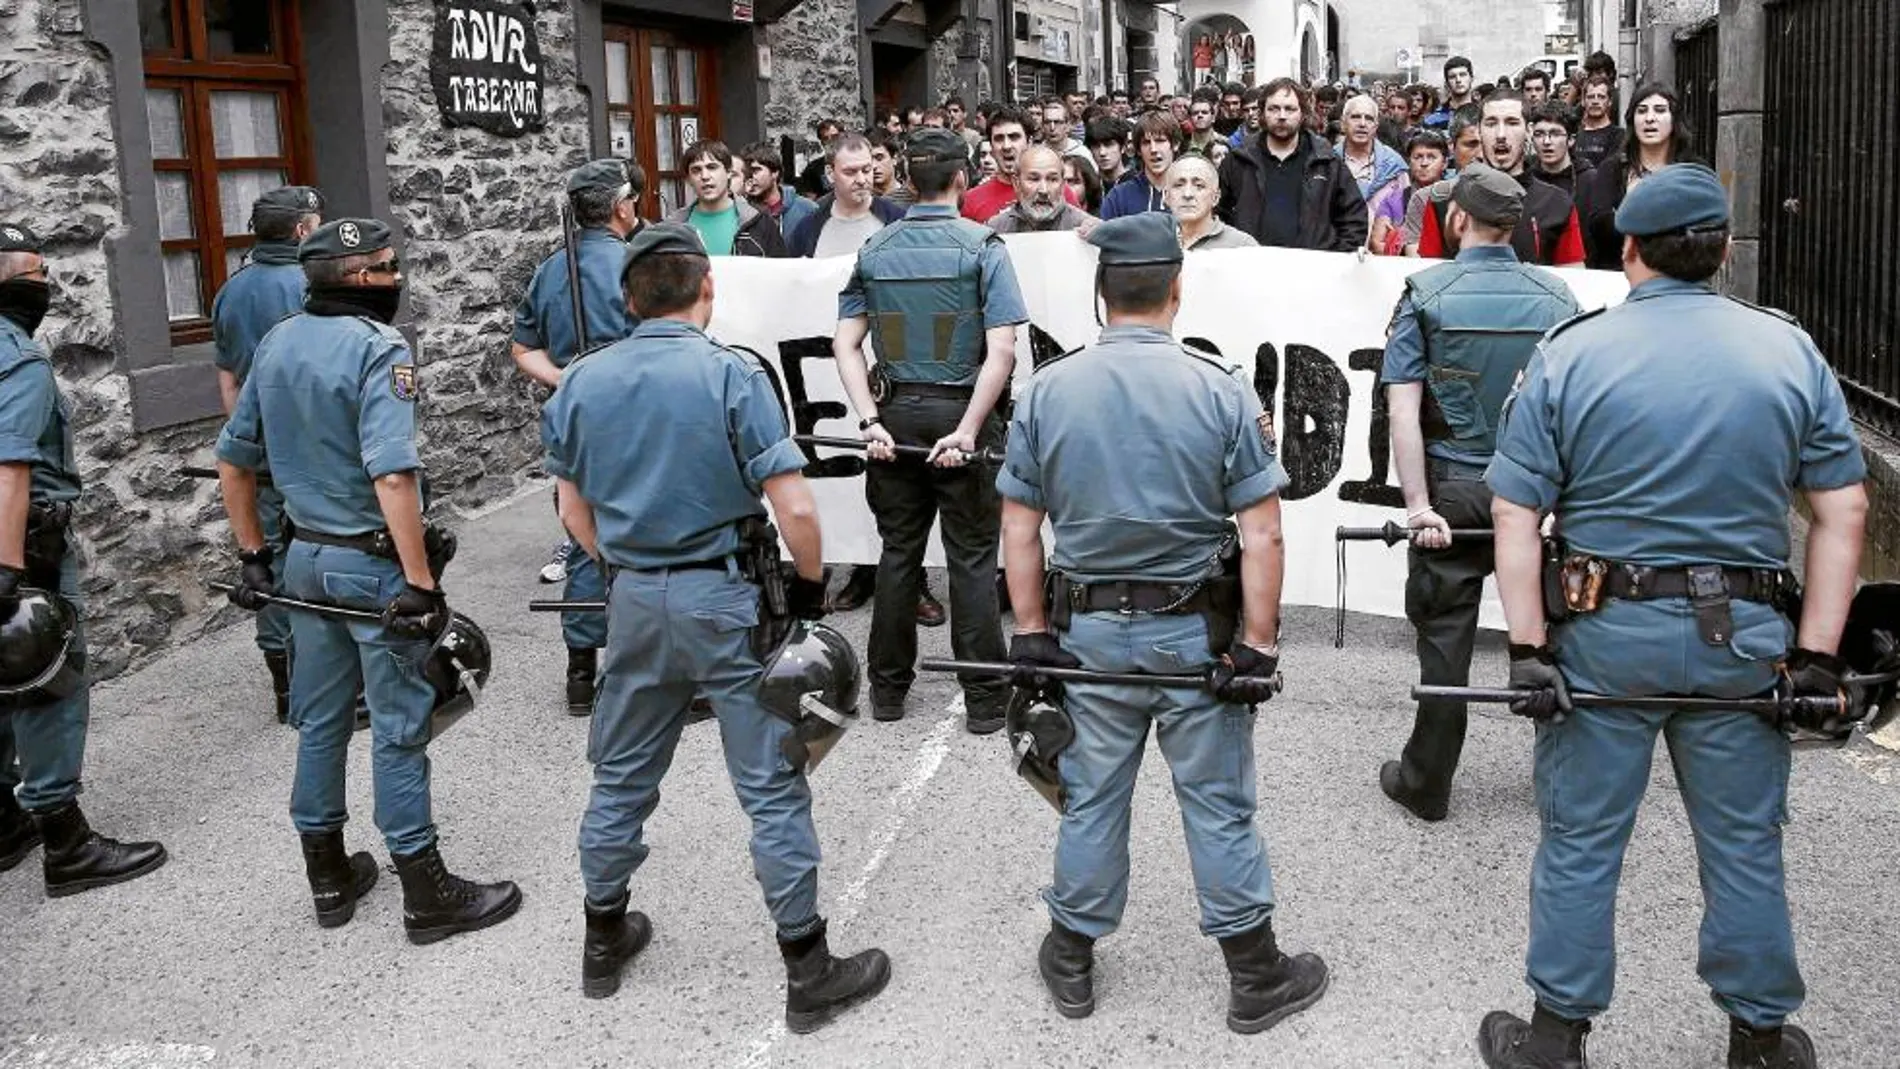 Efectivos de la Guardia Civil vigilan una concentración en protesta por la visita del ministro Fernández Díaz a Leitza (Navarra) en 2013